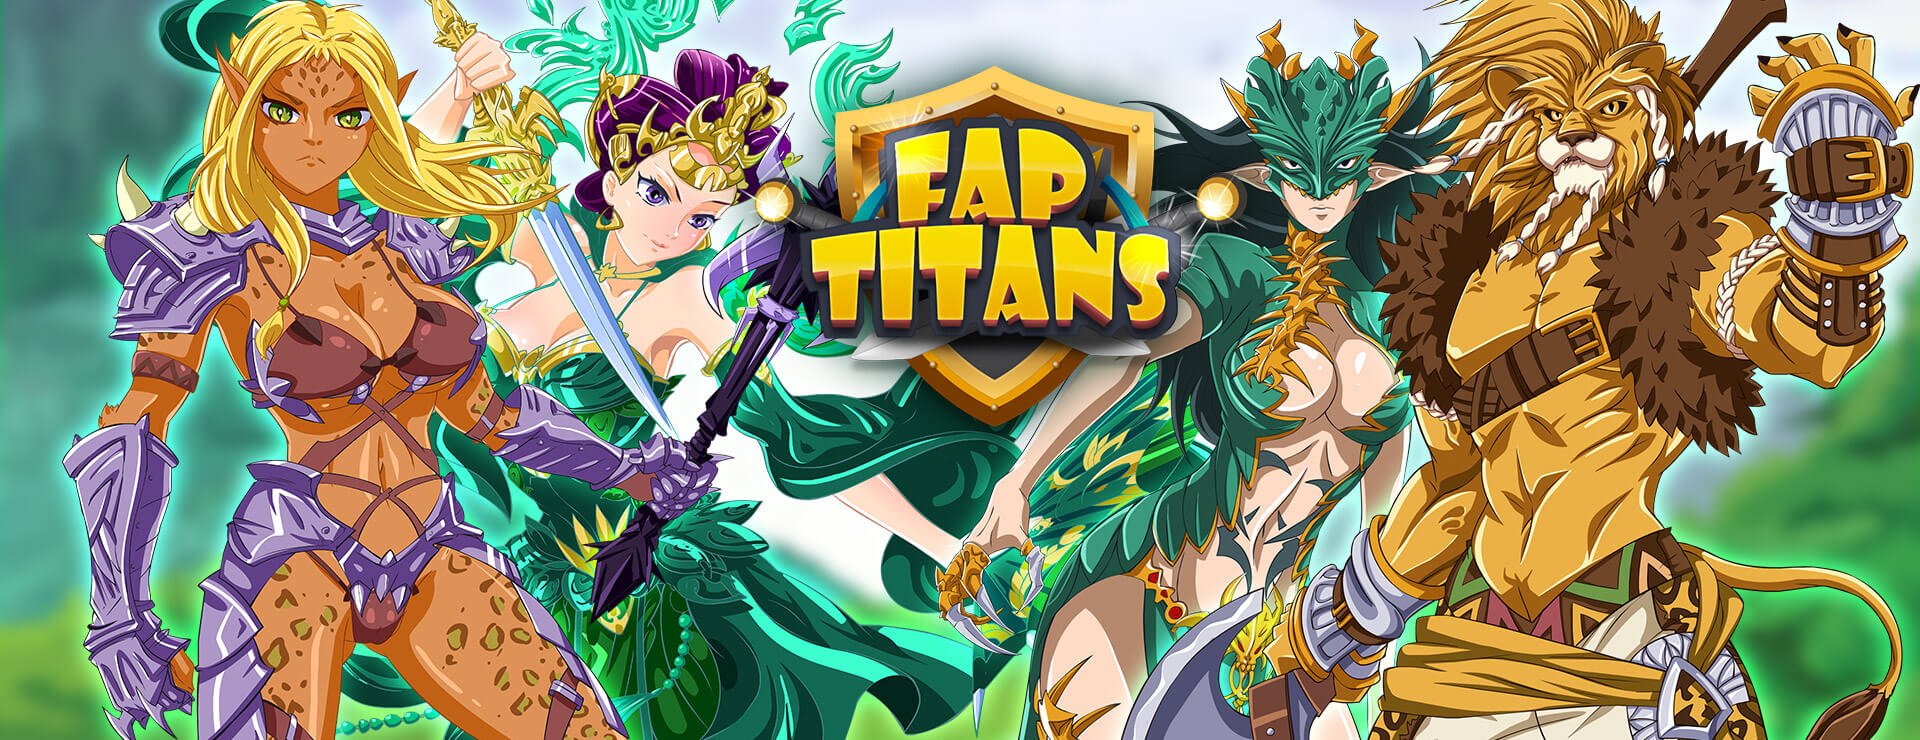 Fap Titans Game - Casual Gra